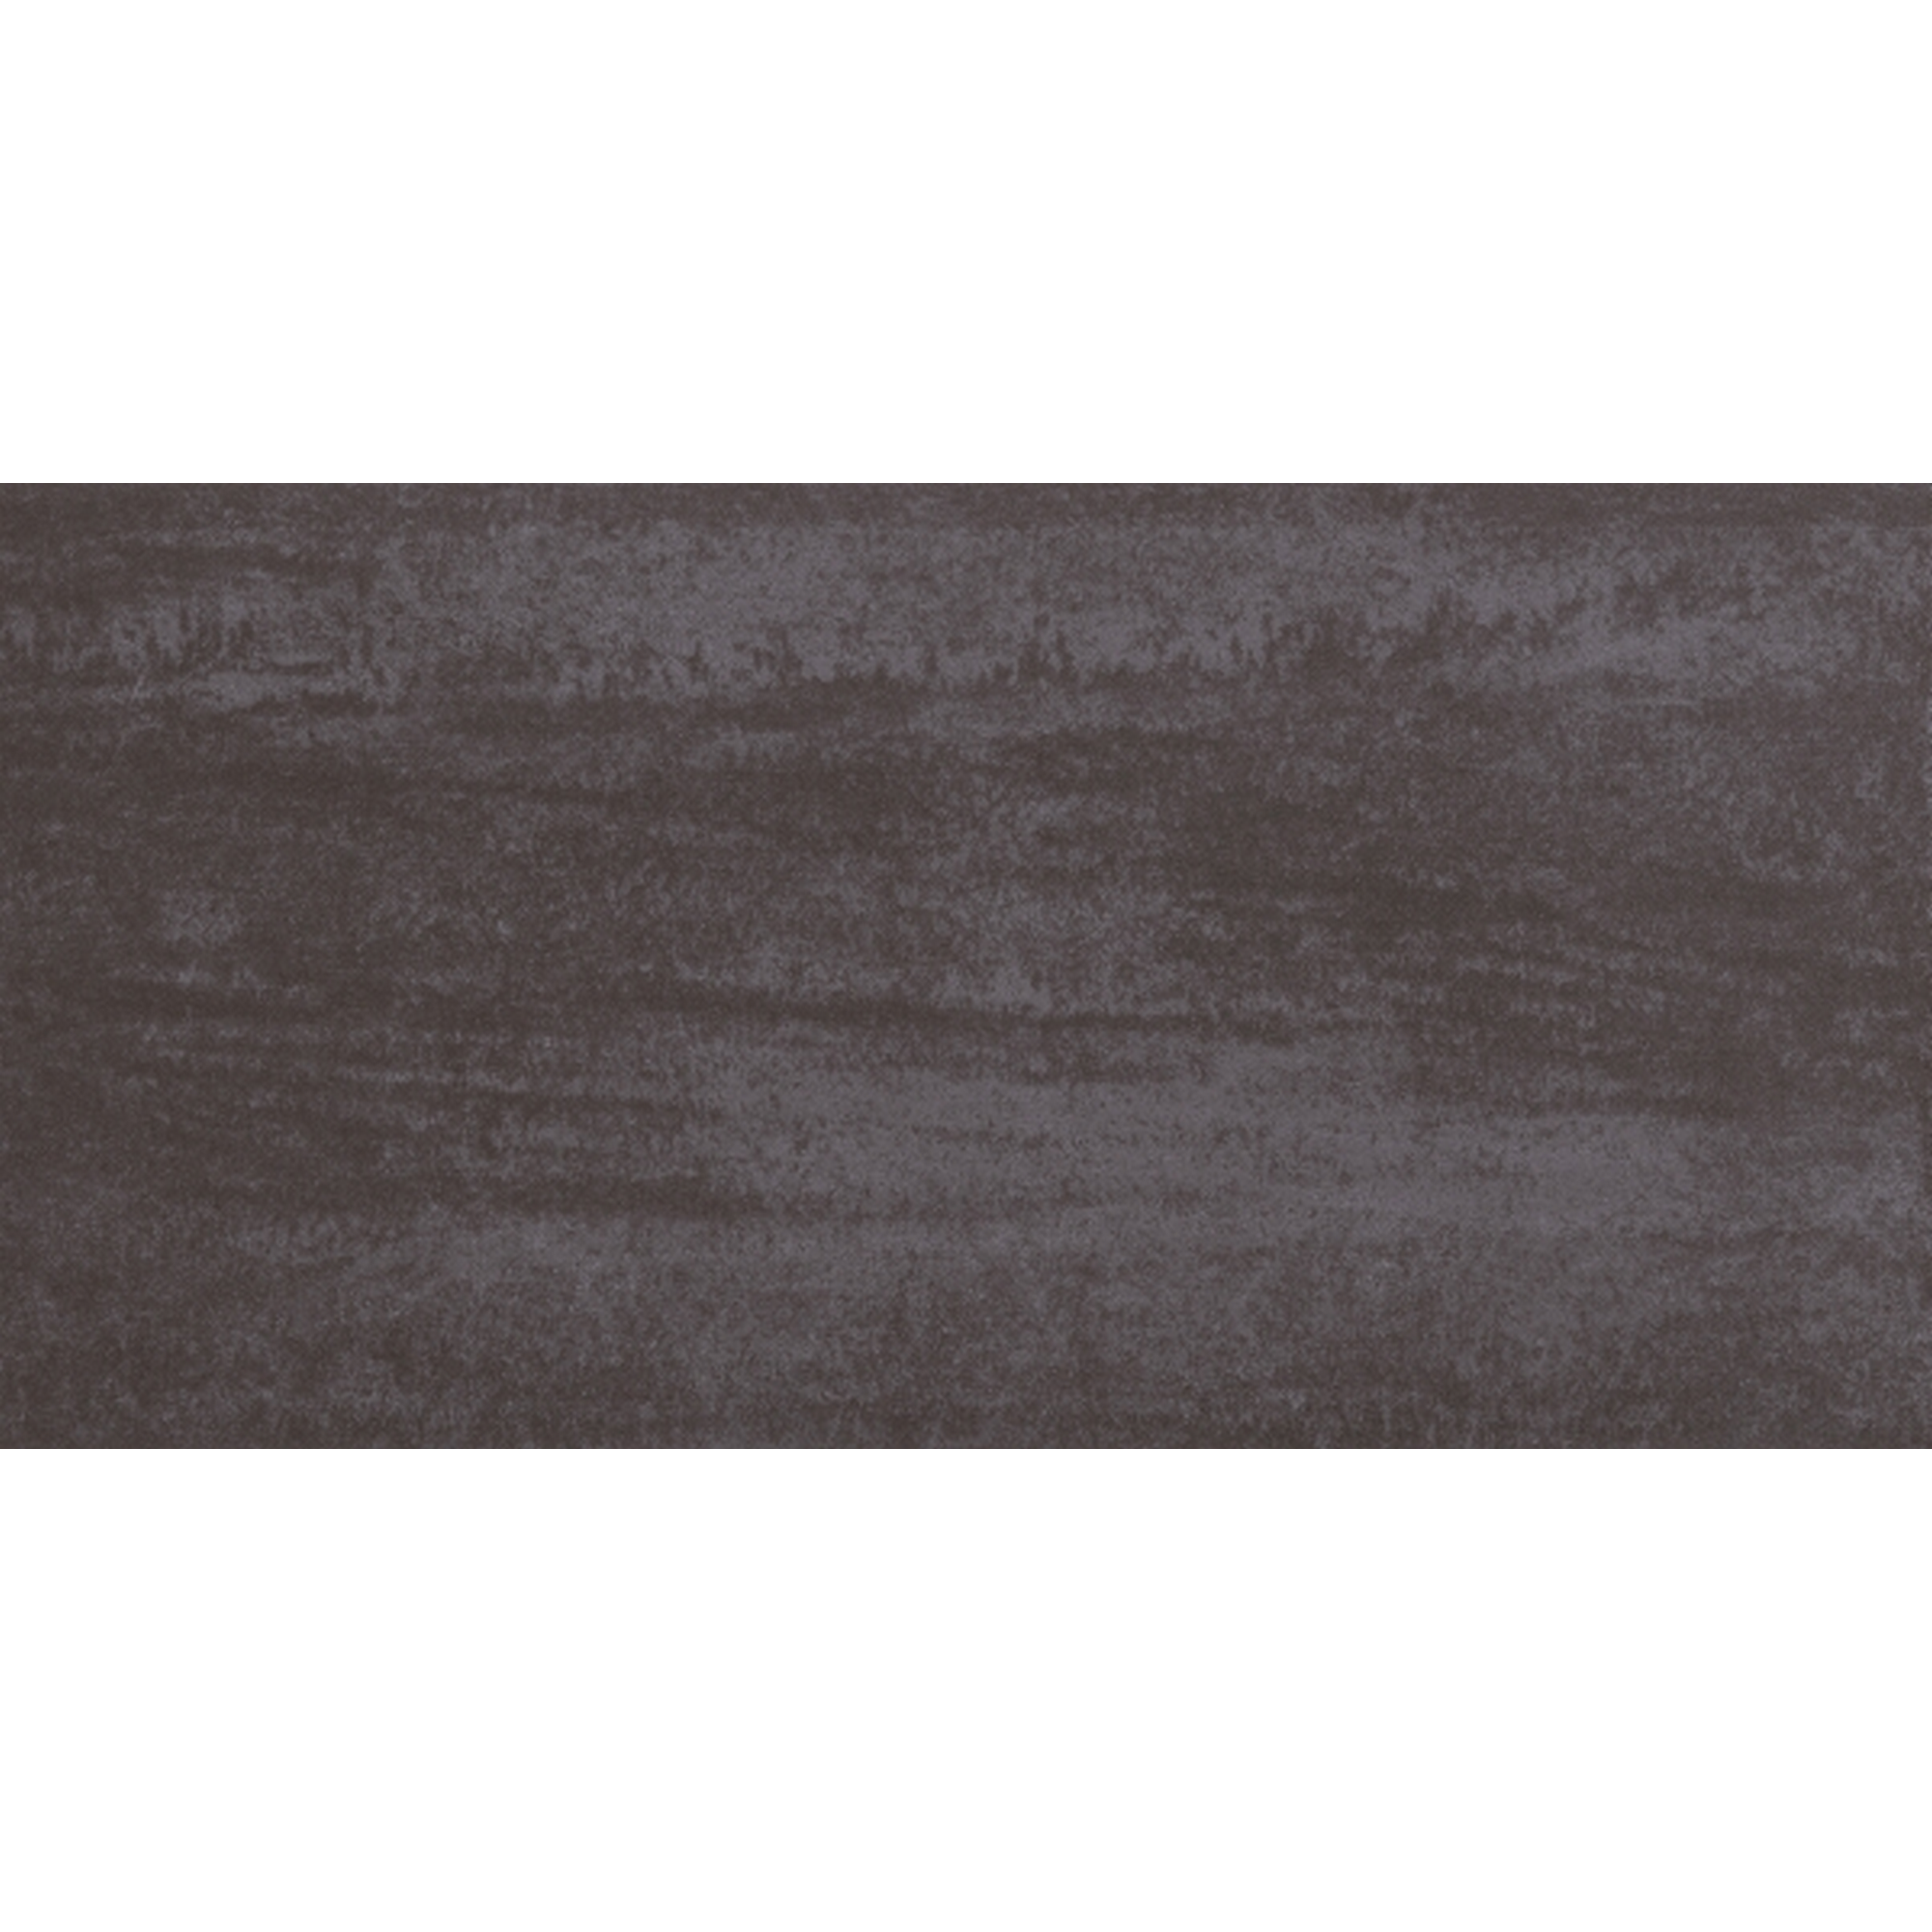 Bodenfliese 'Corte' Feinsteinzeug anthrazitfarben 30,5 x 61 cm + product picture